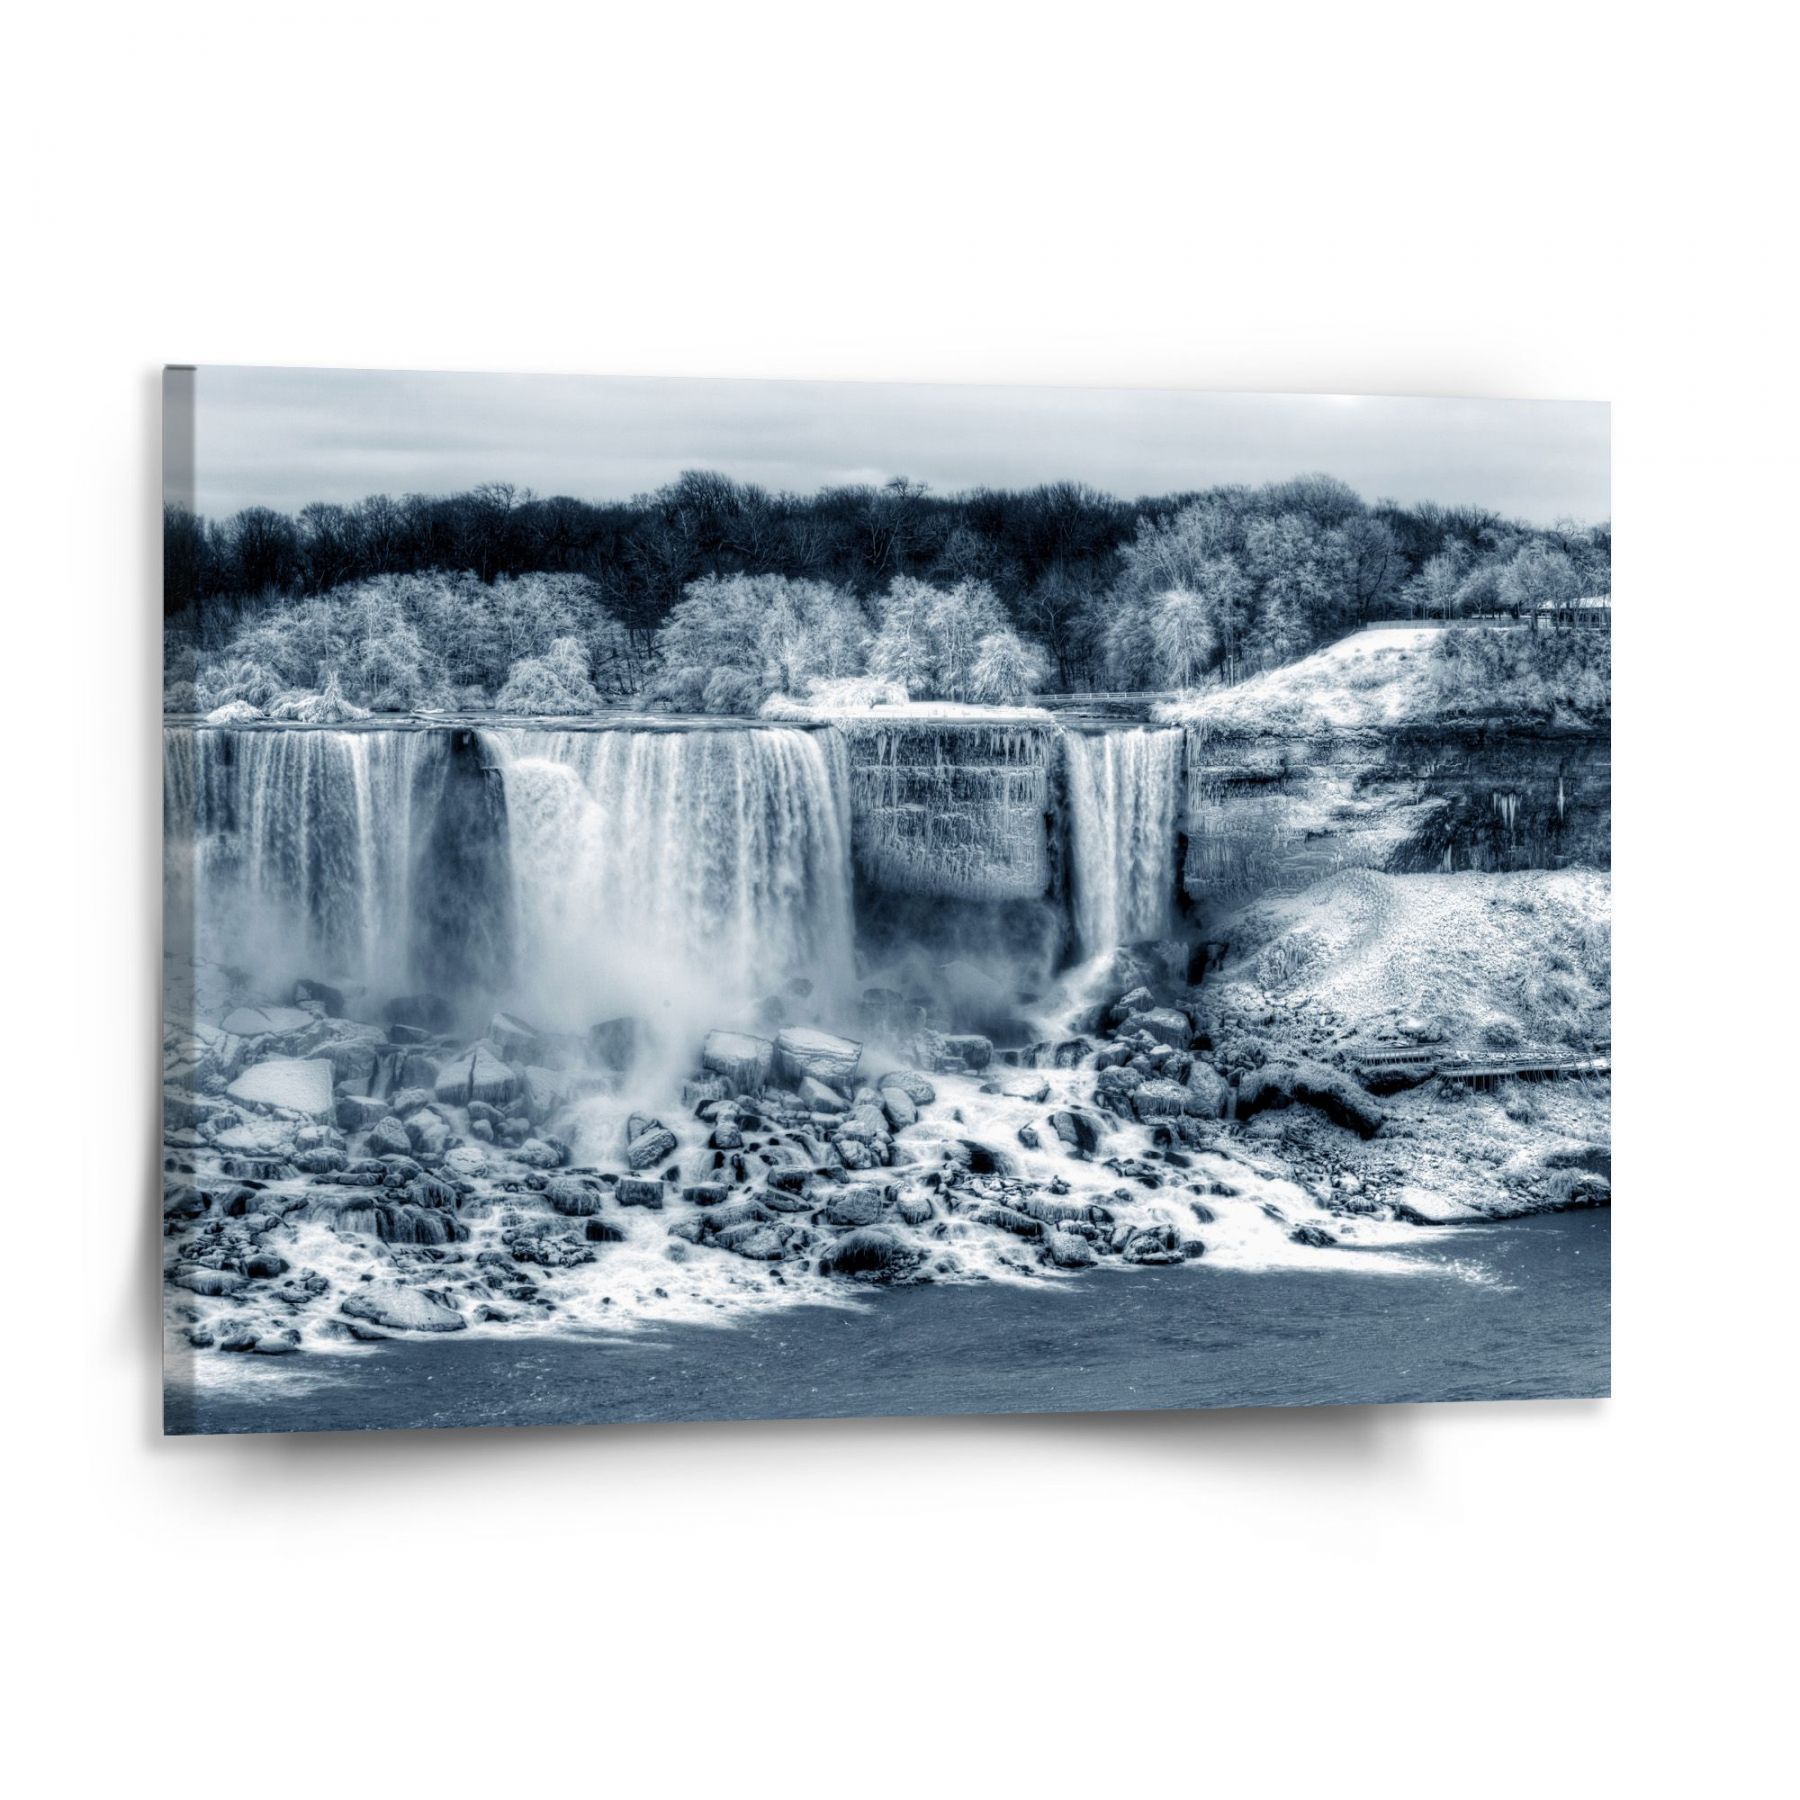 Obraz SABLIO - Černobílý vodopád 150x110 cm - E-shop Sablo s.r.o.